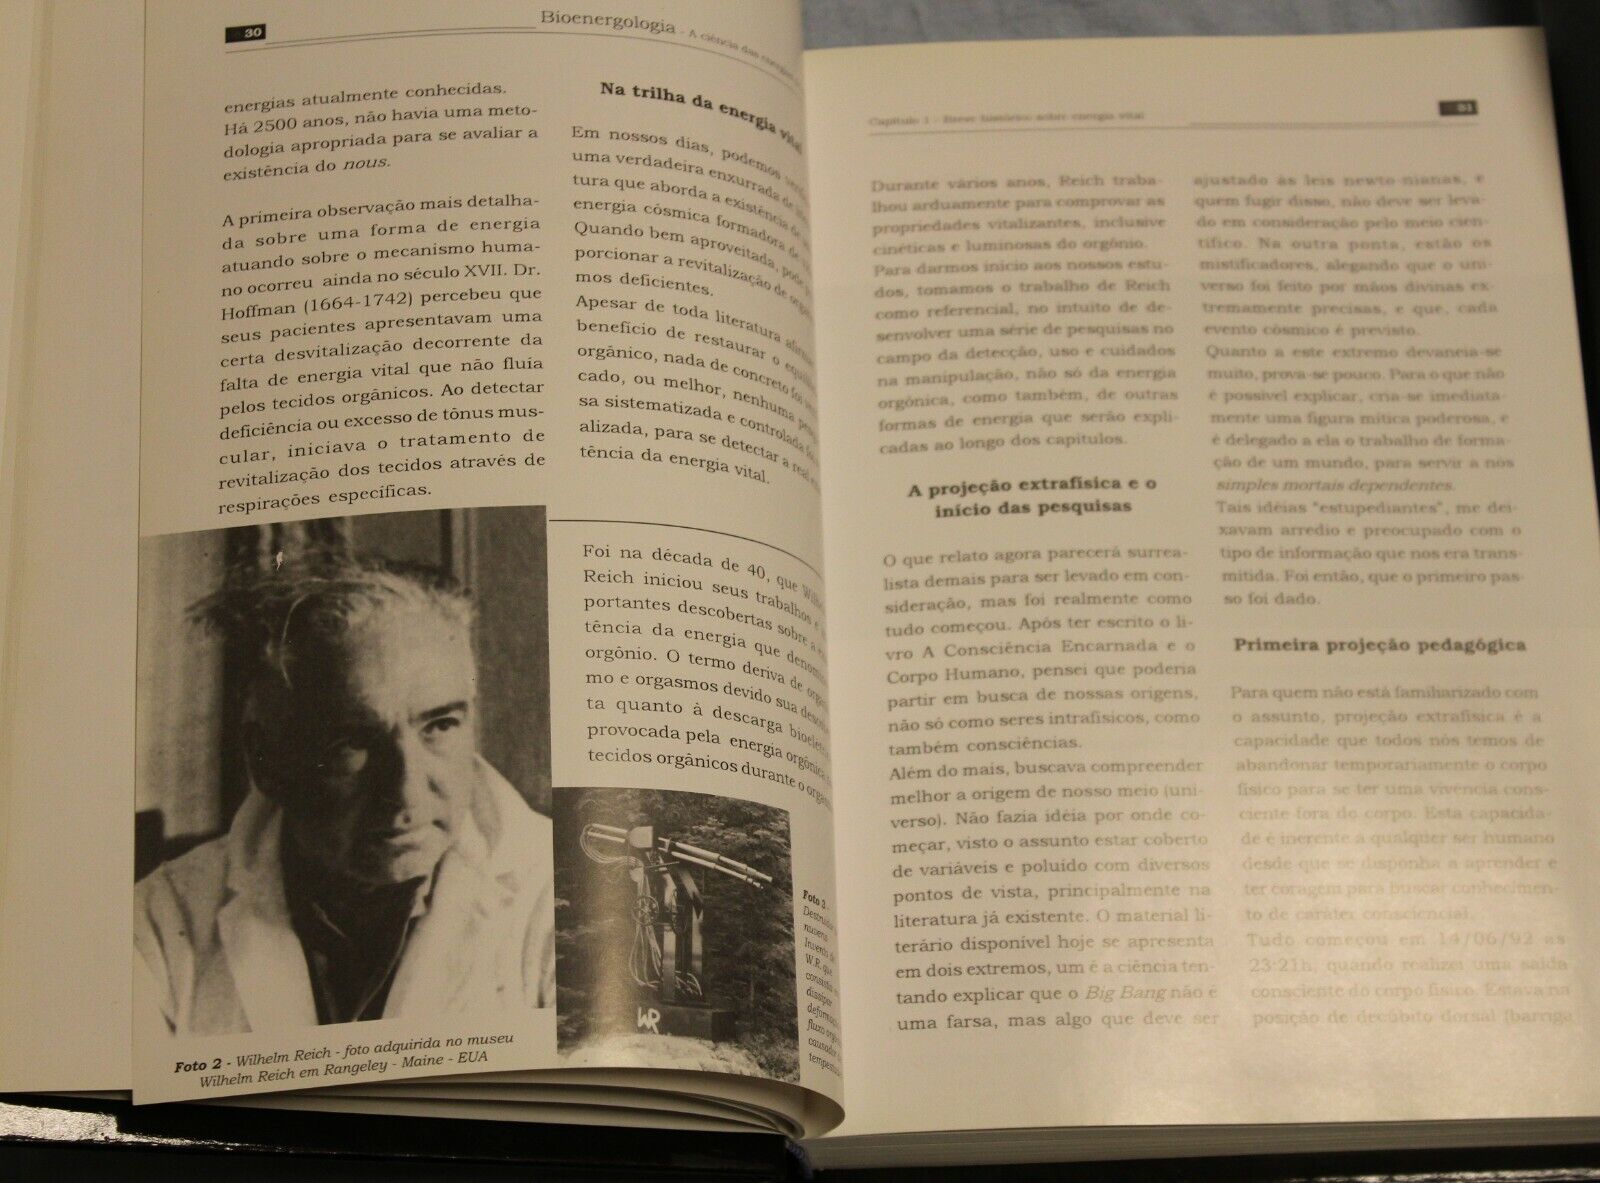 11370.Medical book: Bioenergologia Signed by author Geraldo Medeiros, Jr 2000